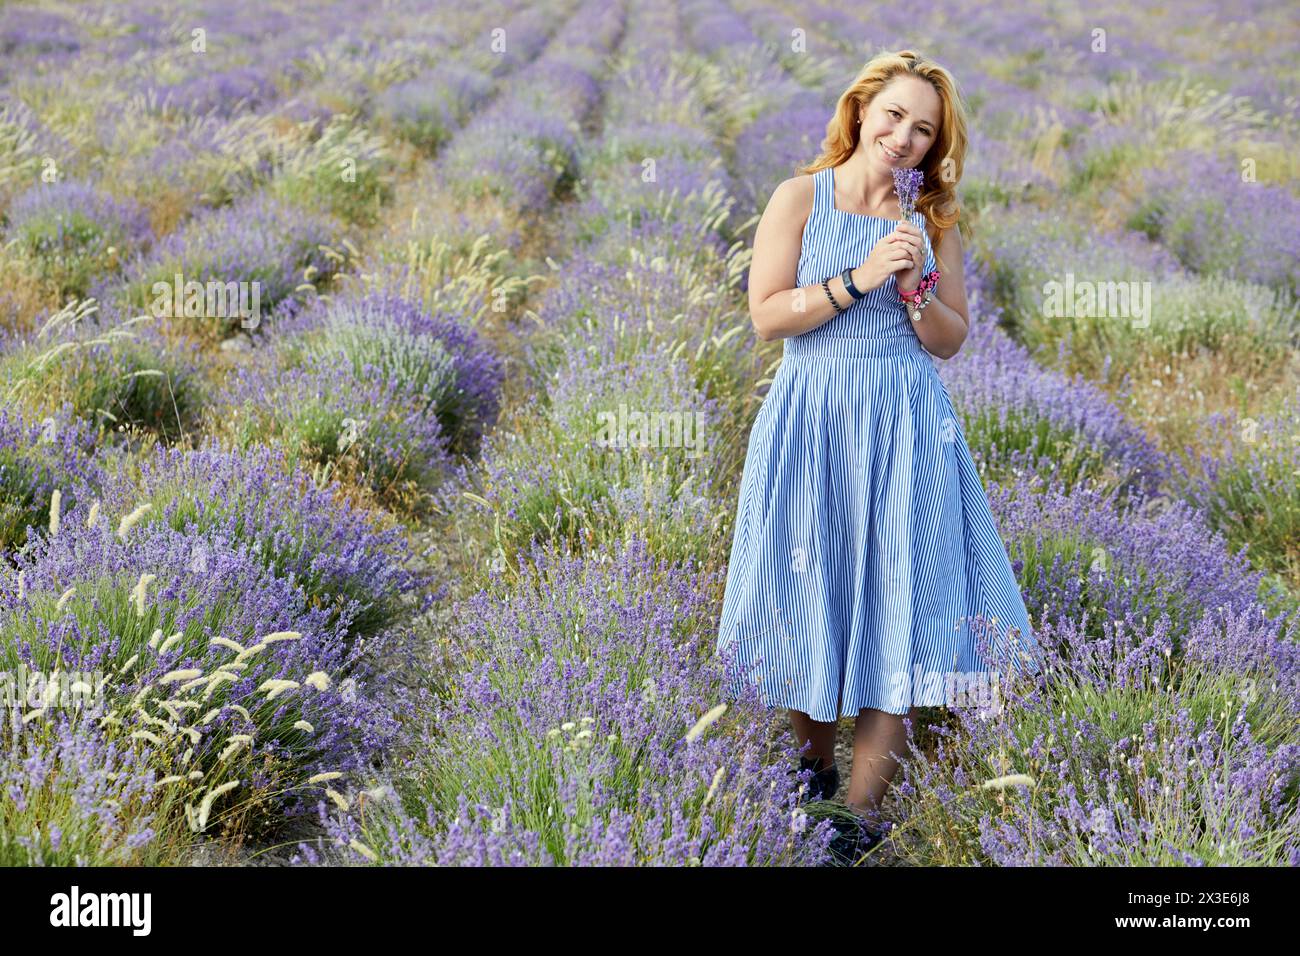 Femme blonde en robe de soleil rayée bleue sur le champ de lavande. Banque D'Images